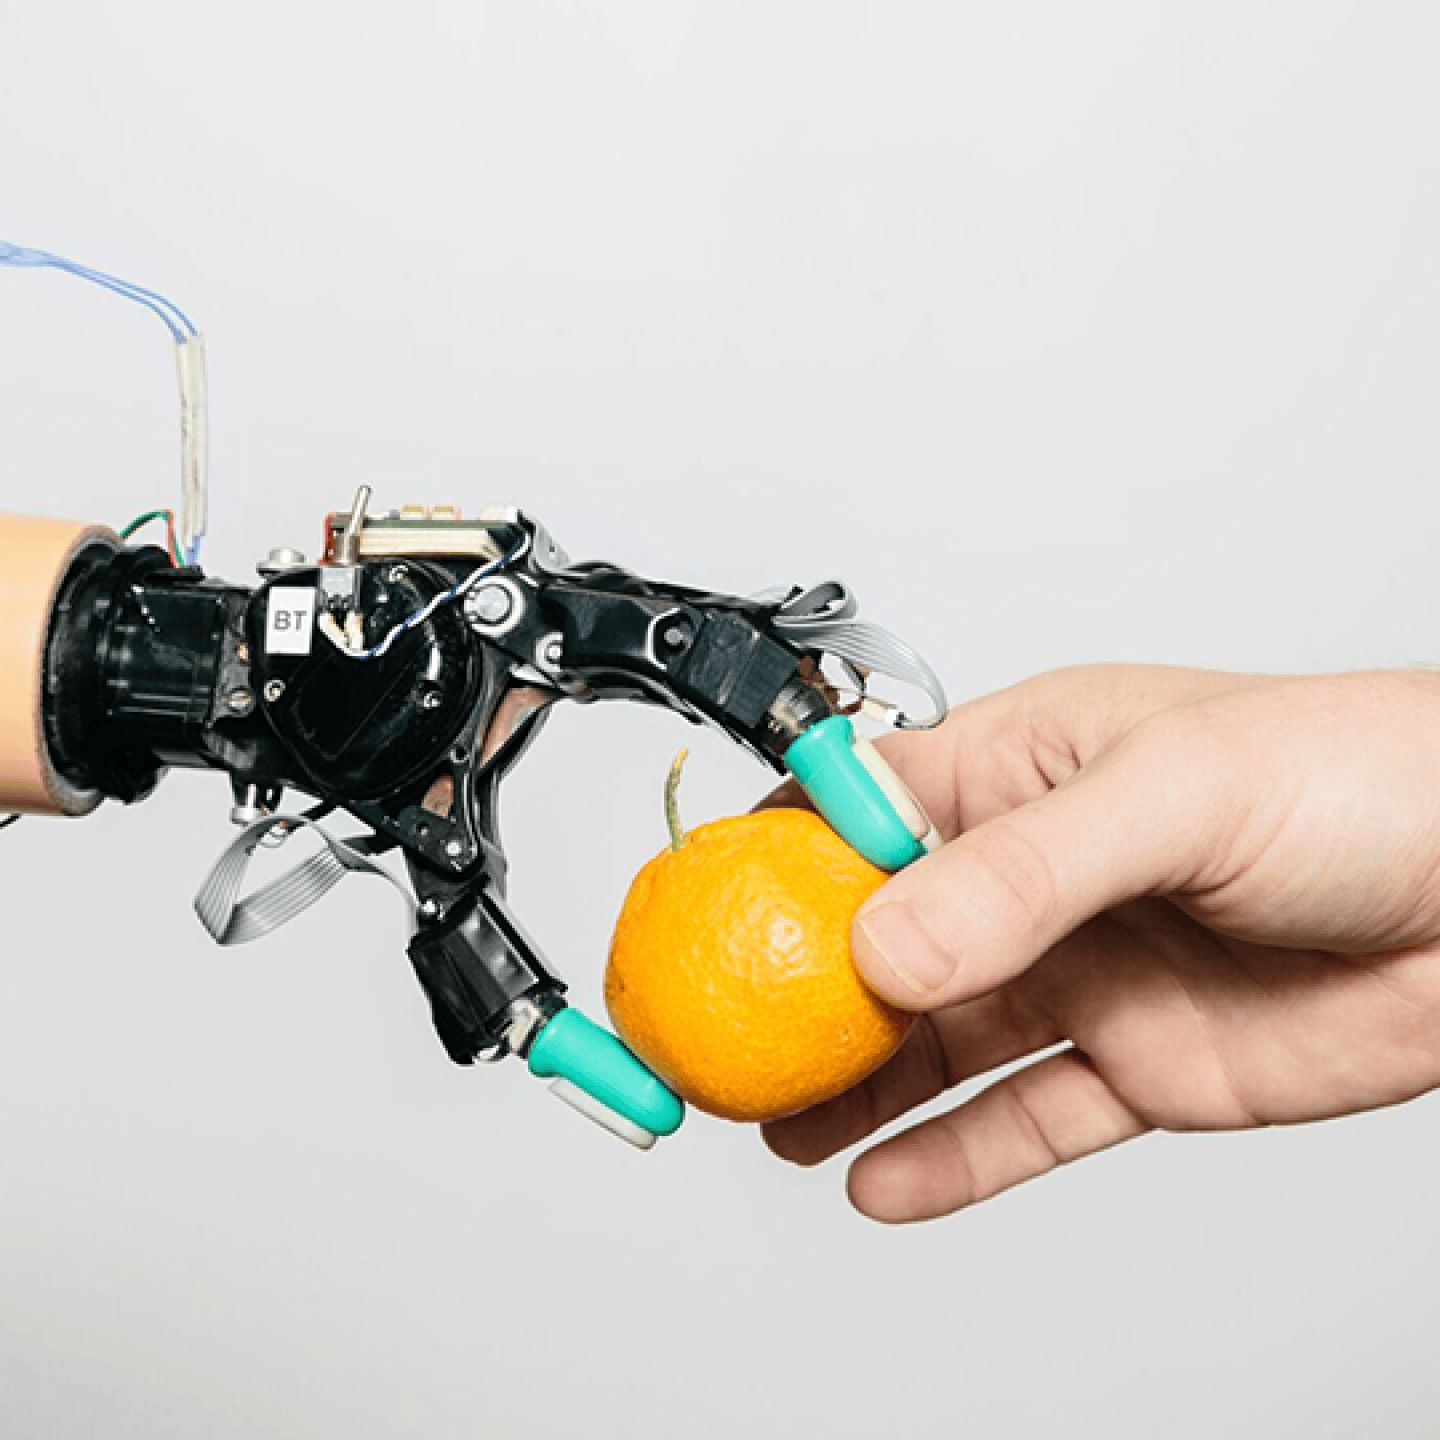 一只机器人手正在从一个人的手中拿取橘子